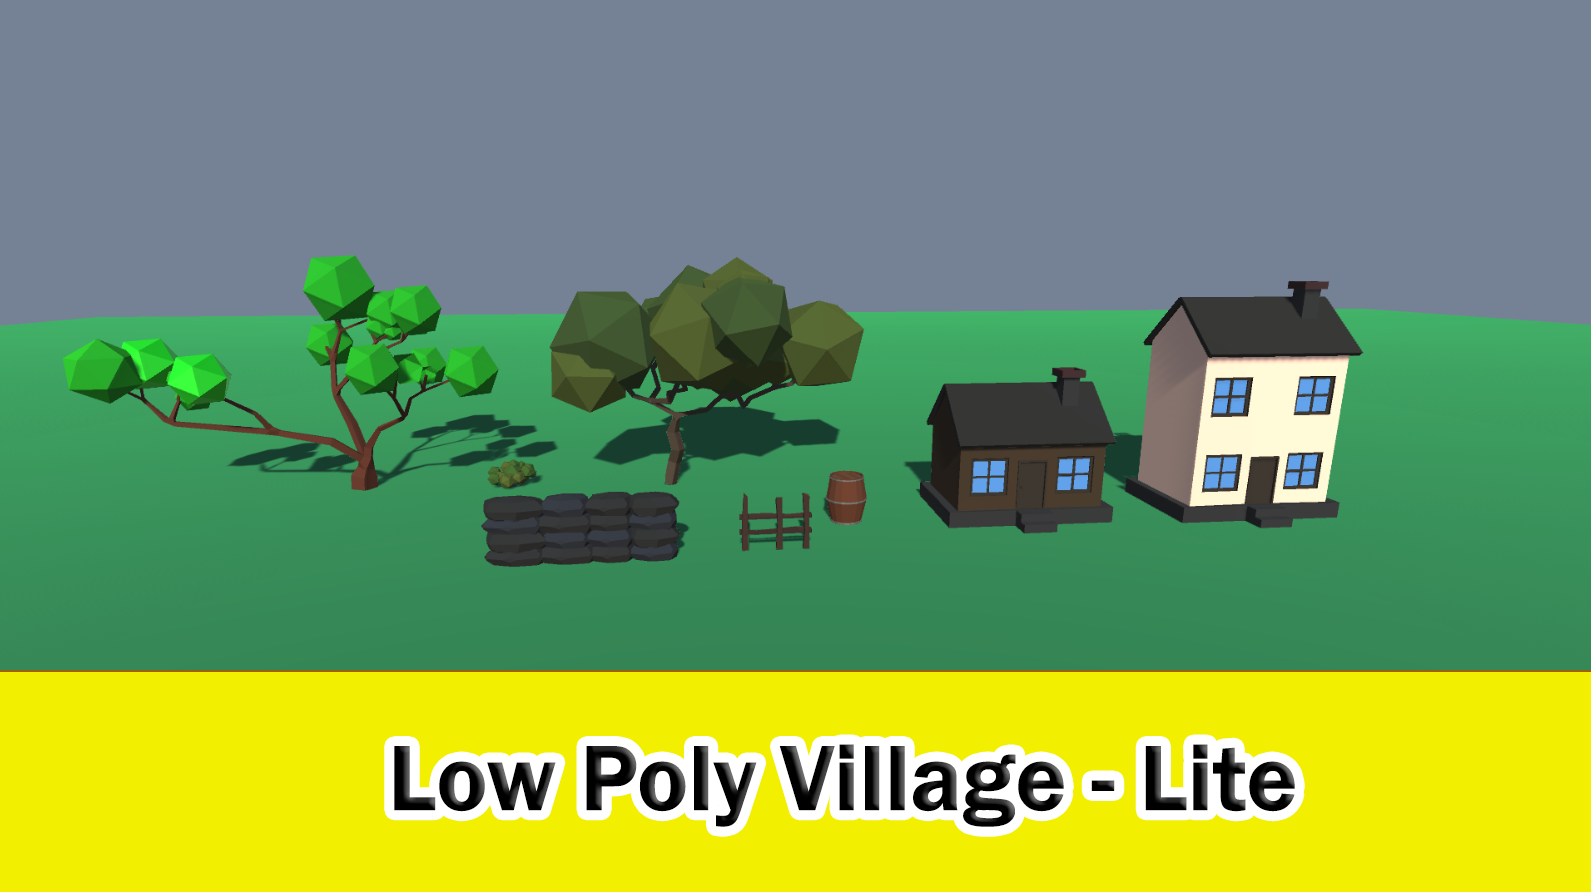 Low Poly Village - Lite